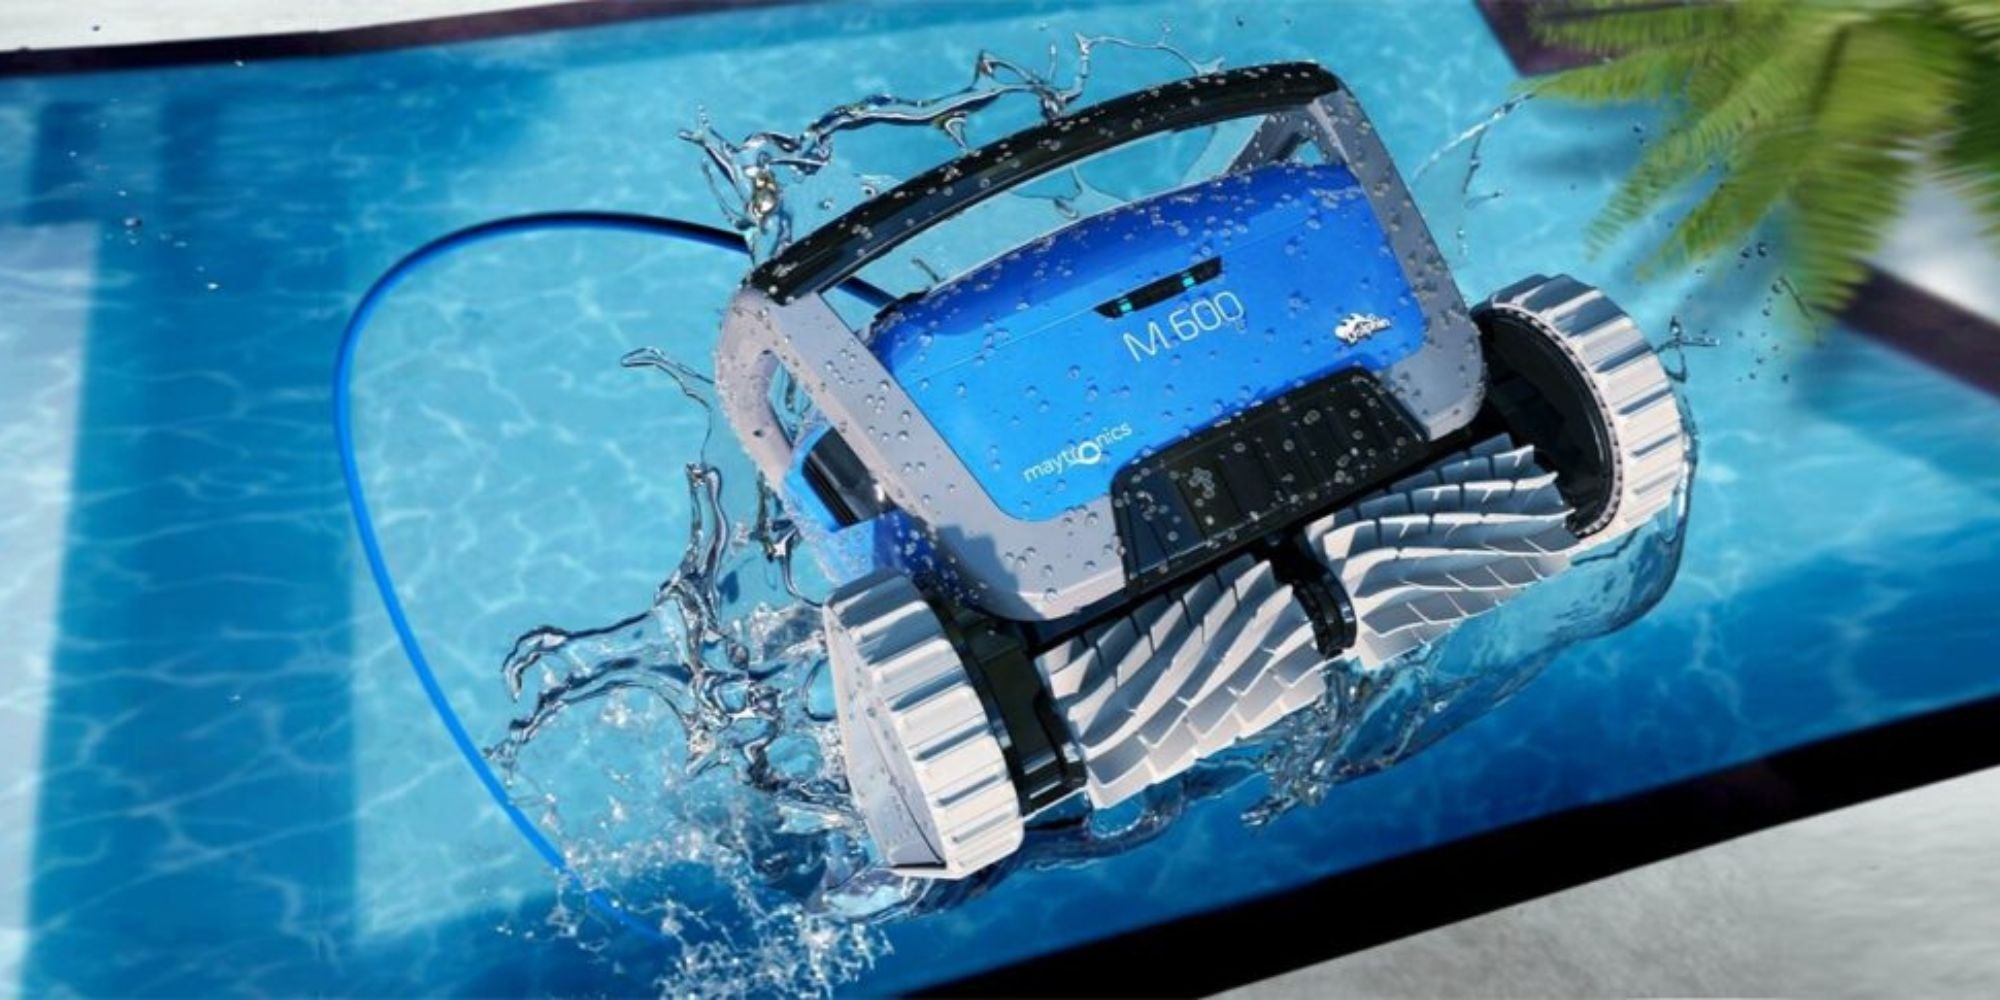 Aspirateur de piscine : balai, robot les meilleurs modèles